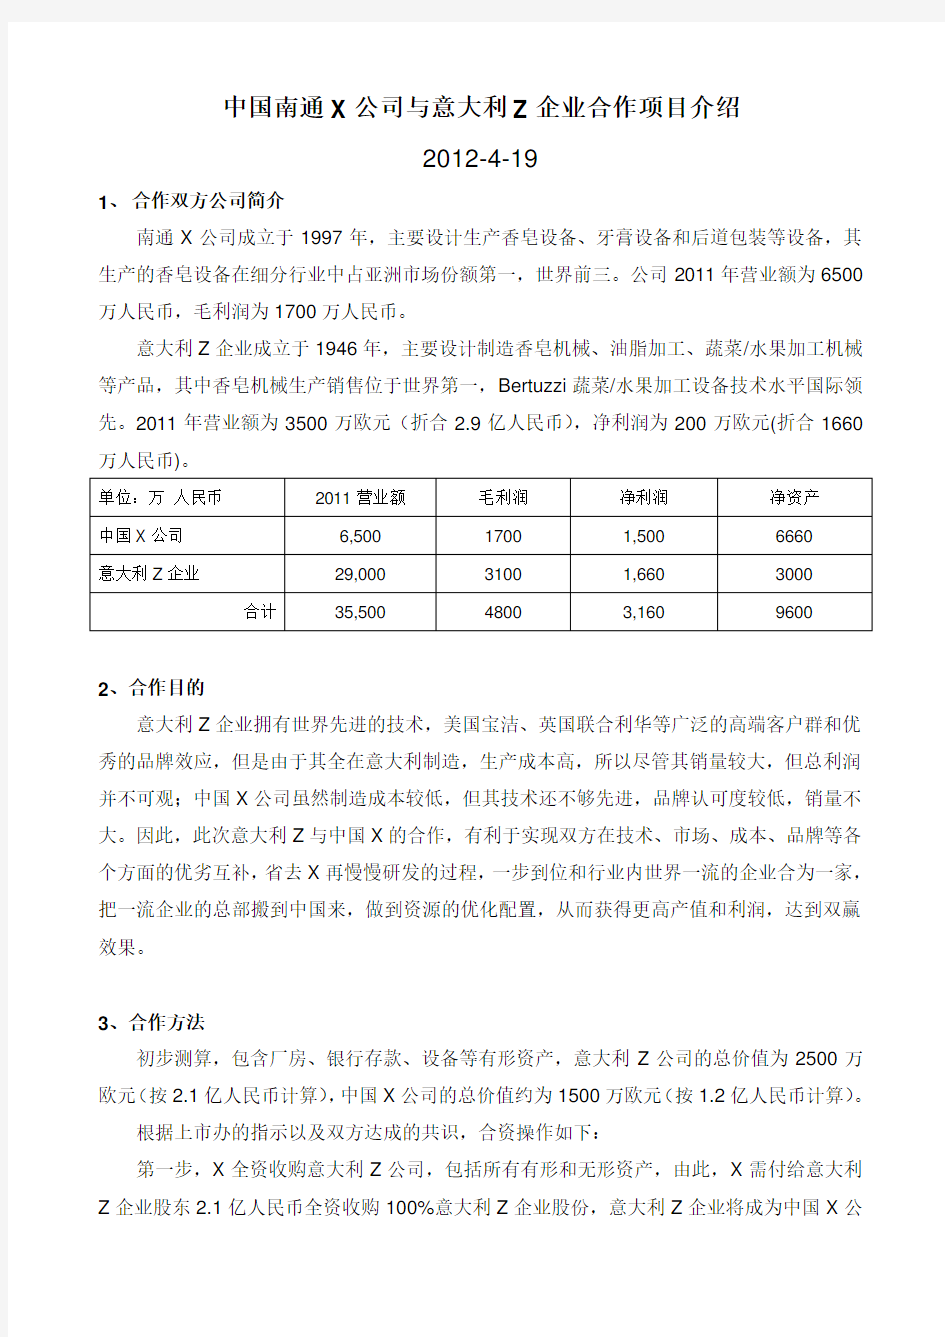 中国X公司与意大利Z企业合作项目介绍(简)2012-4-19